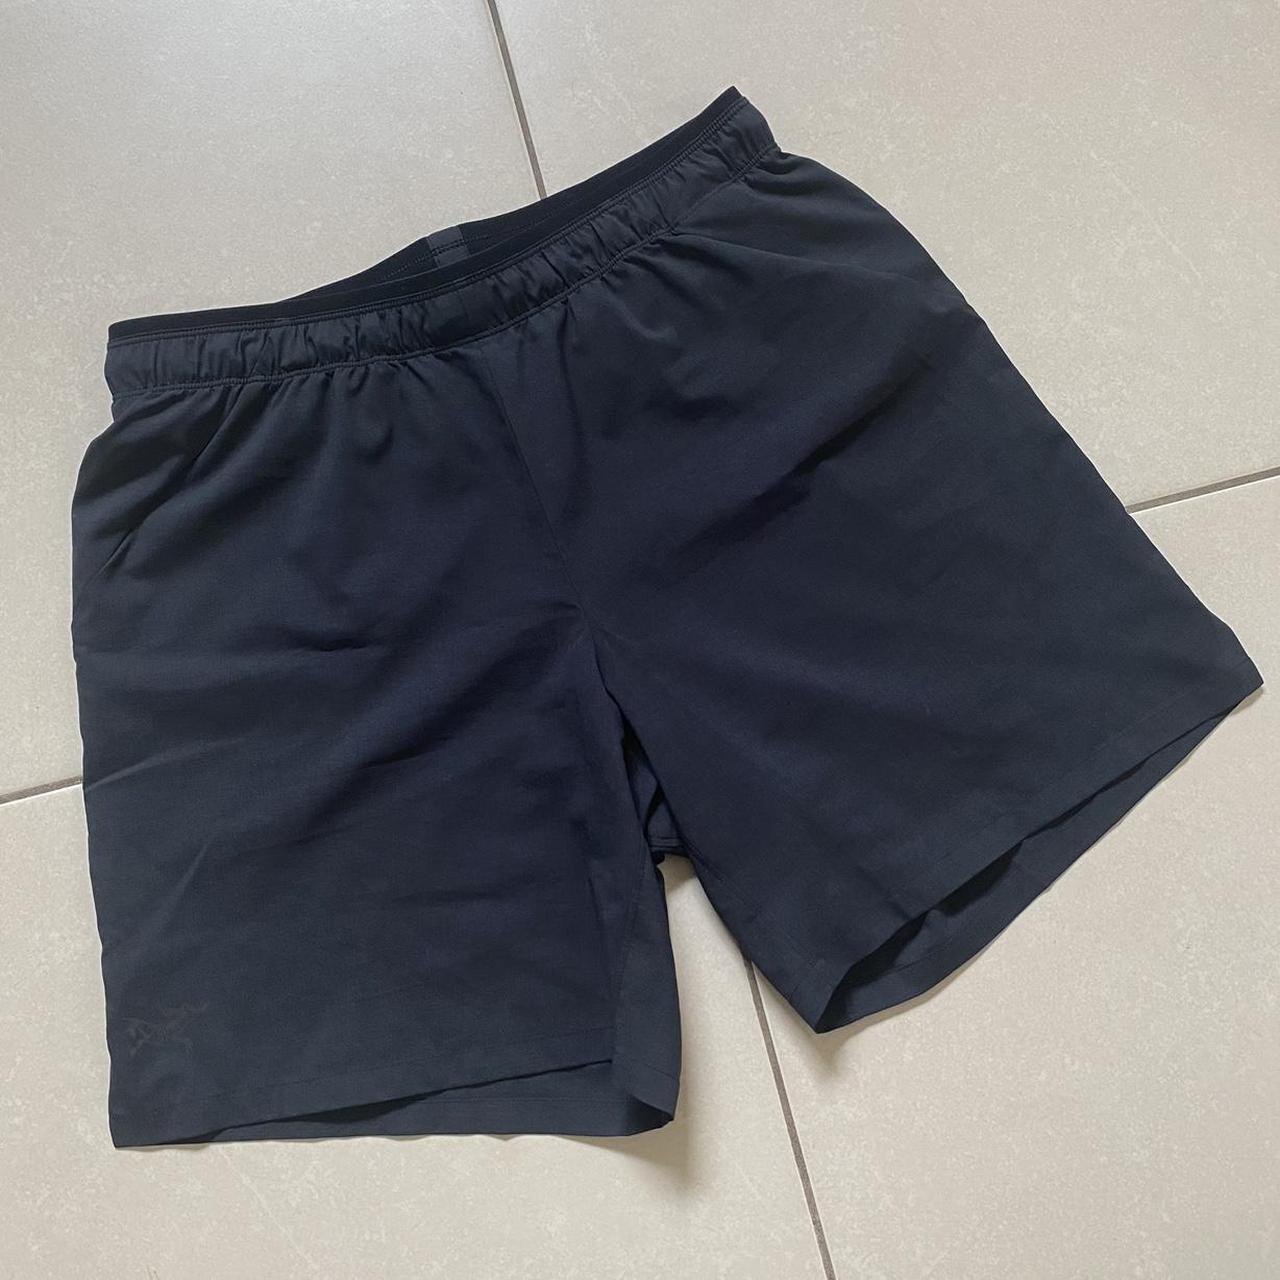 Arcteryx Norvan 7” shorts Size Small, 7”... - Depop